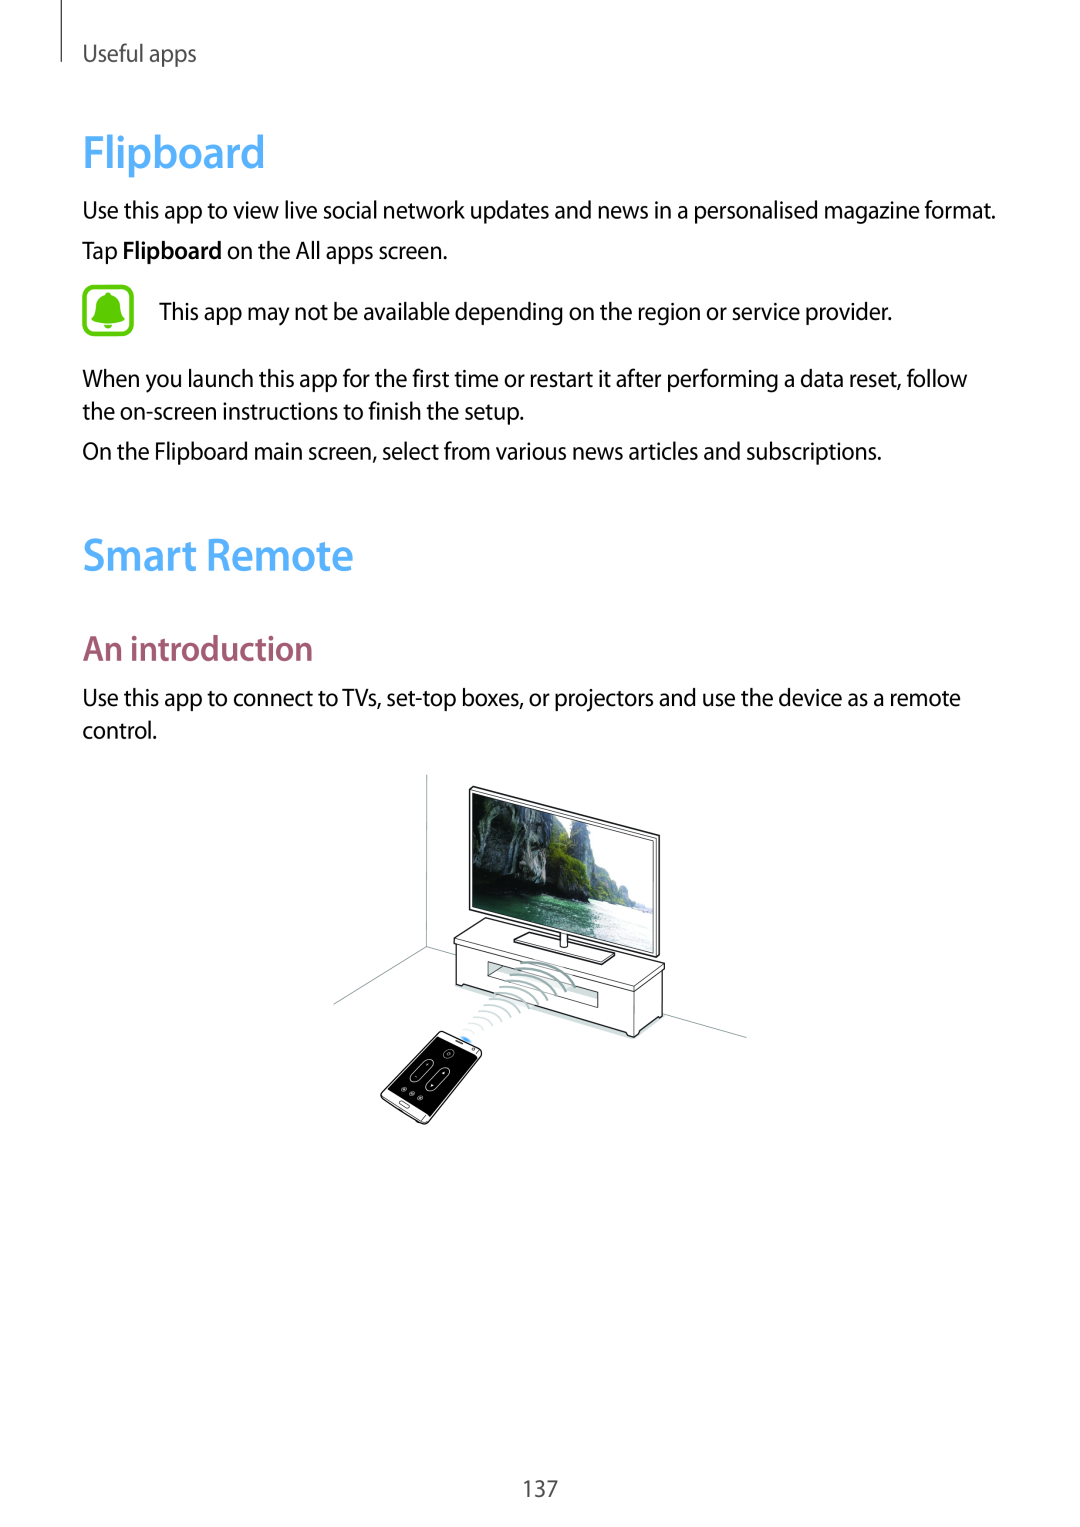 Samsung SM-N915FZKYXEO, SM-N915FZWYEUR, SM-N915FZKYATO, SM-N915FZWYTPH Flipboard, Smart Remote, An introduction, Useful apps 